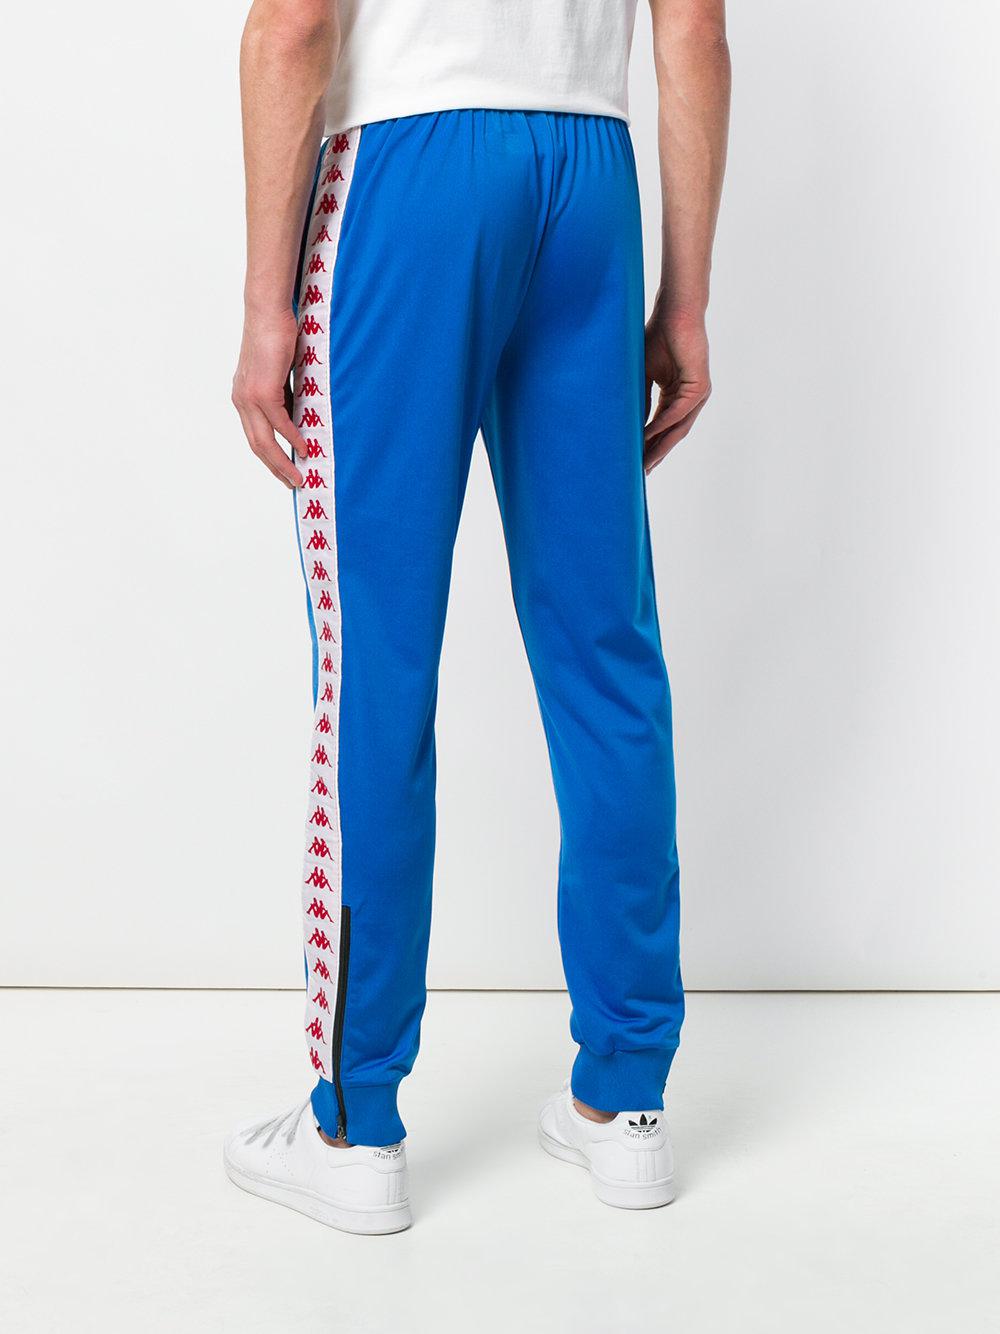 Kappa Side Stripe Track Pants in Blue for Men - Lyst